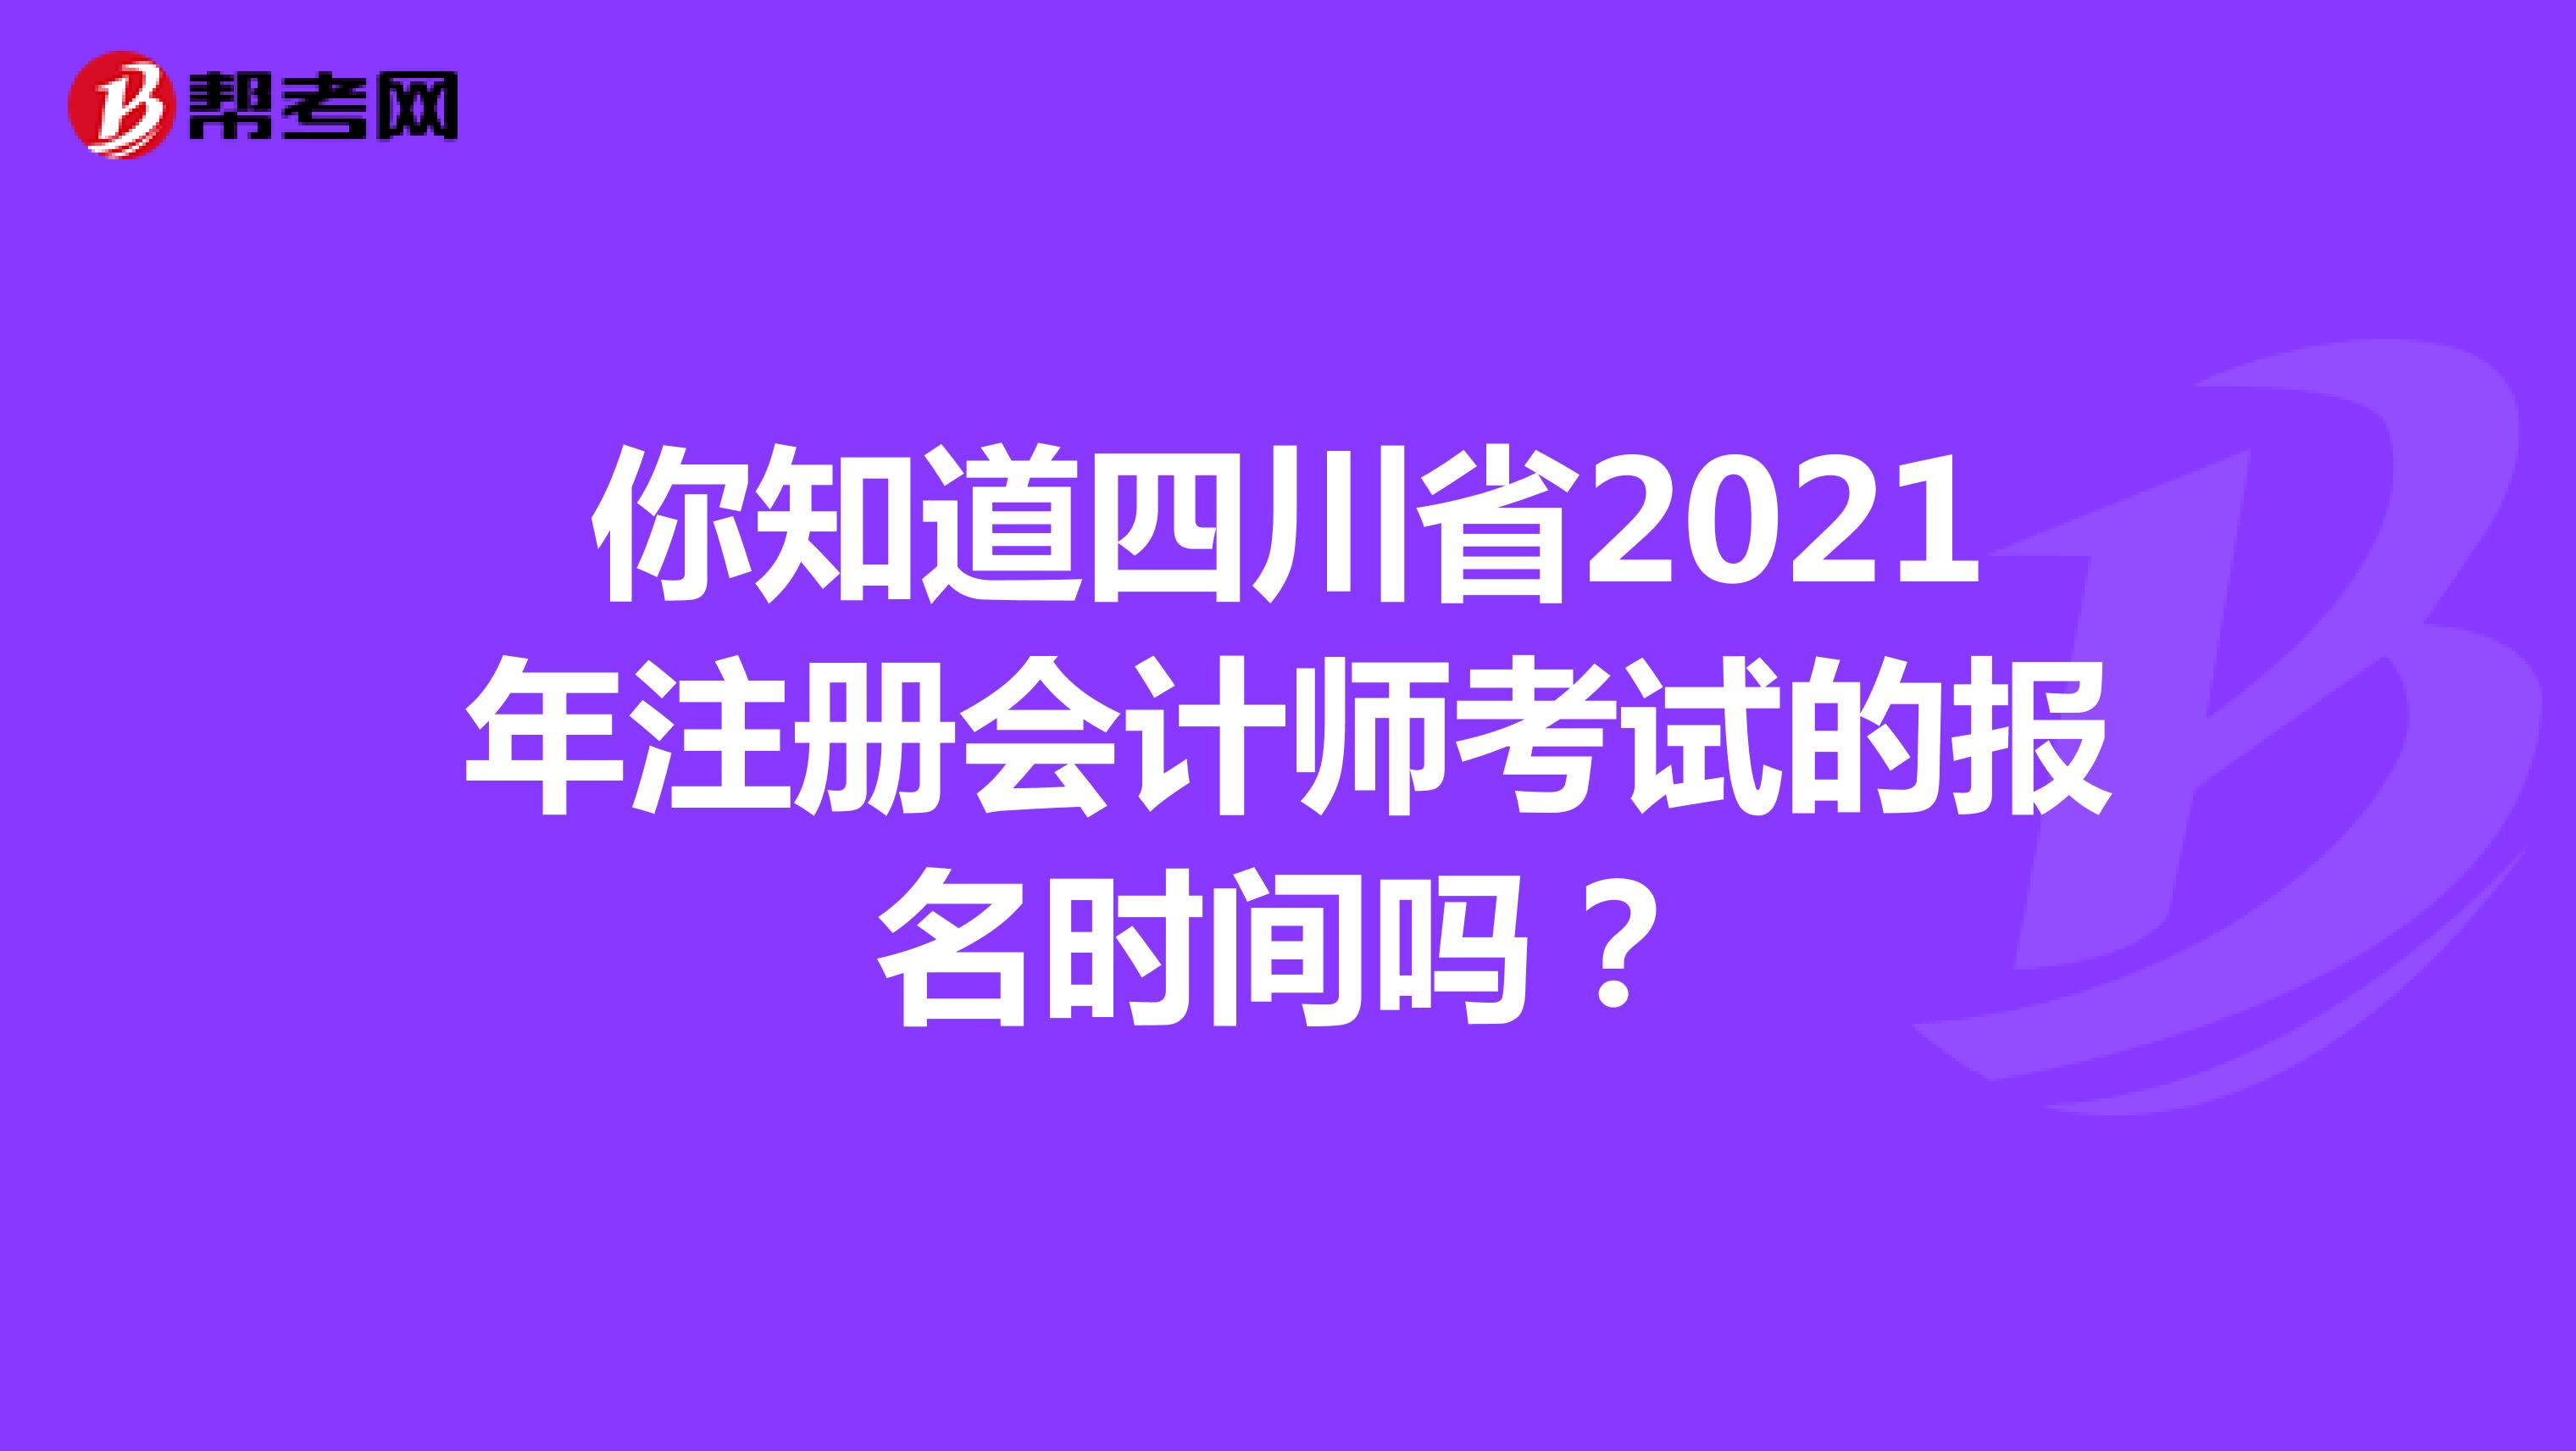 你知道四川省2021年注册会计师考试的报名时间吗？